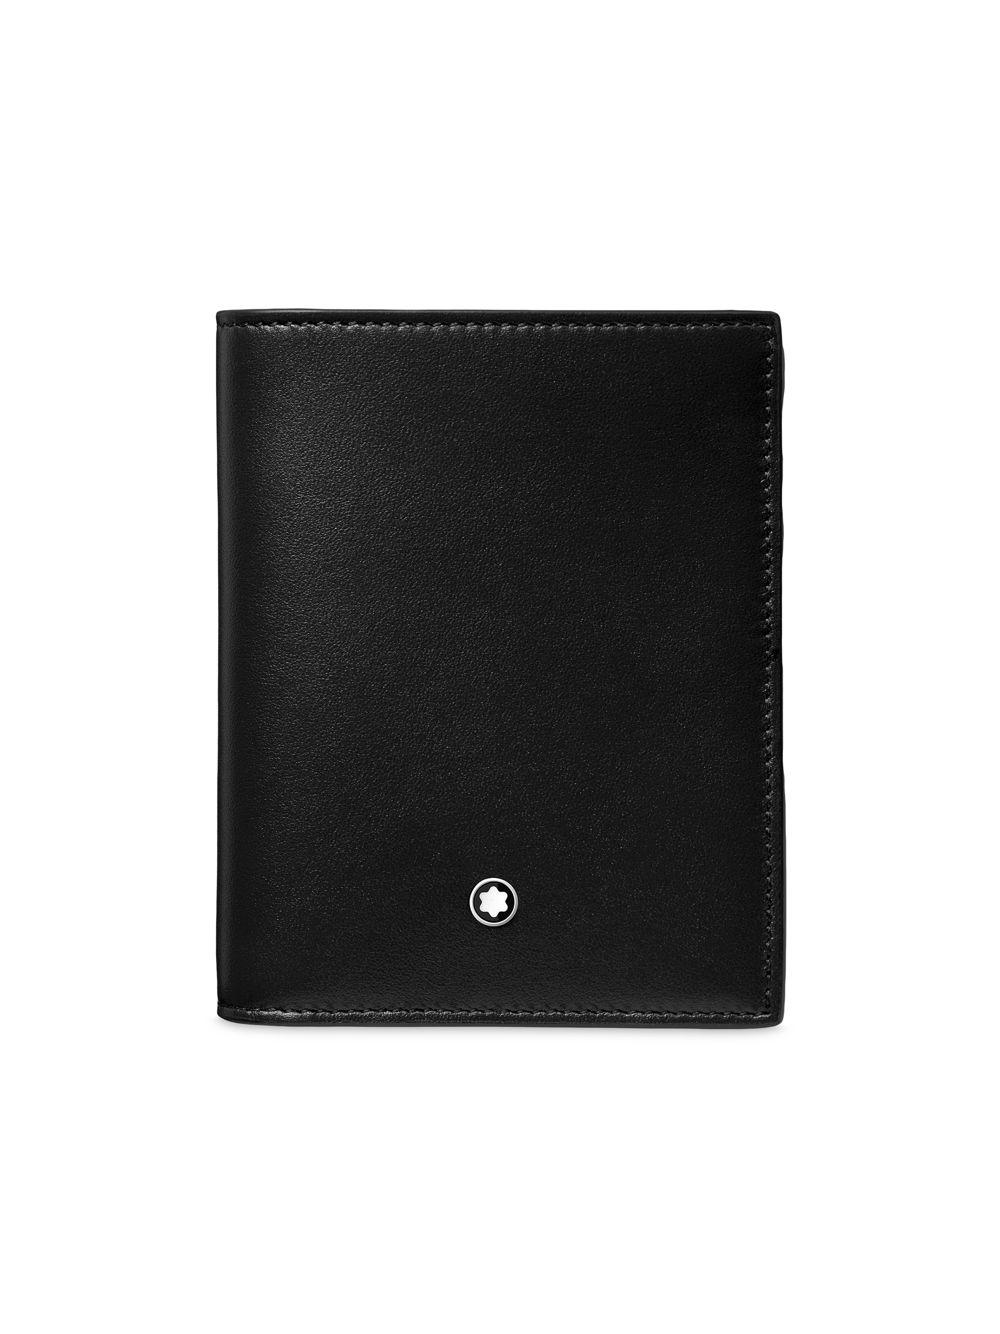 Компактный бумажник Meisterstück Montblanc, черный бумажник meisterstück 6cc montblanc черный